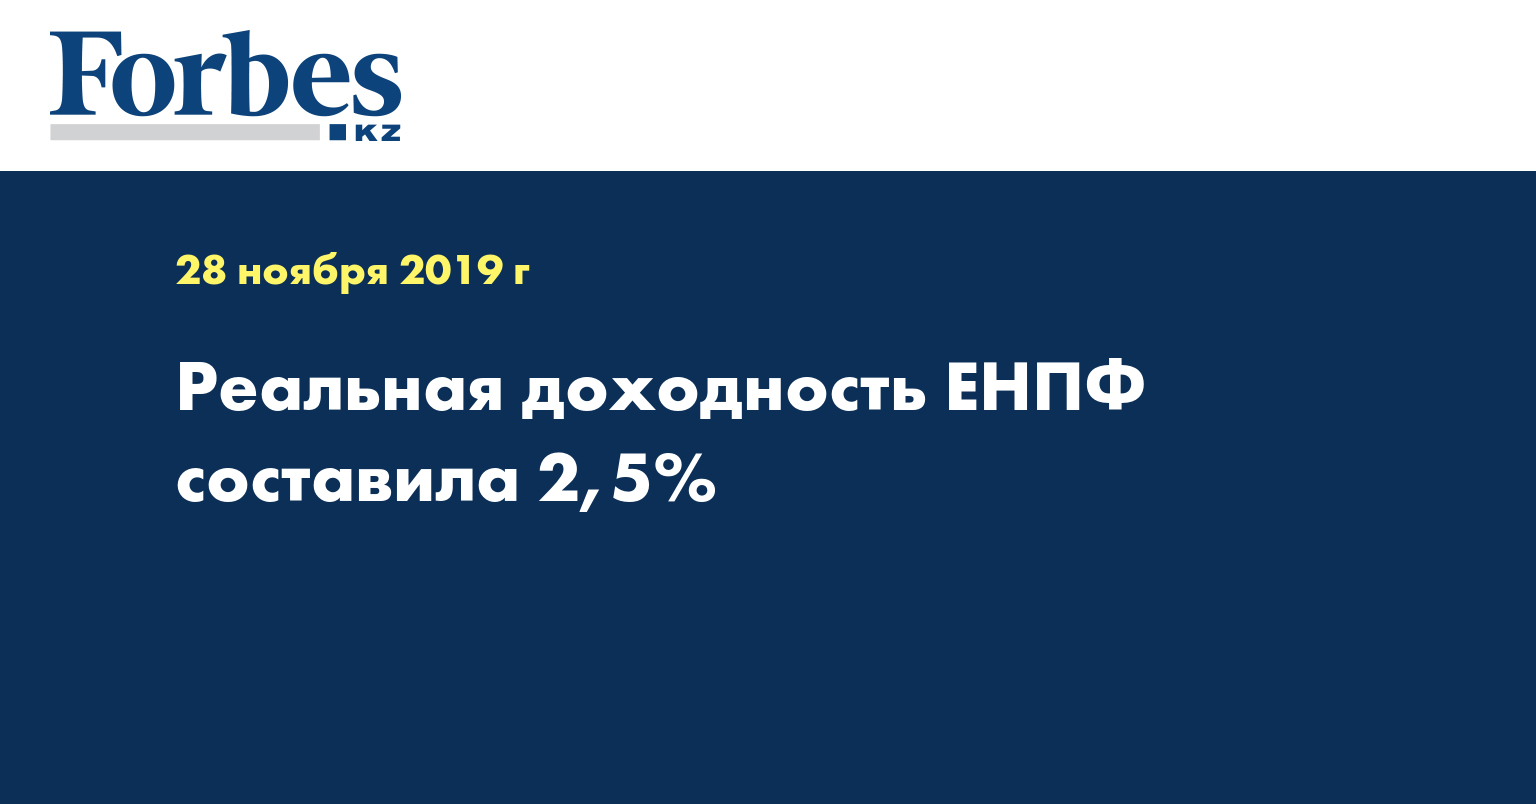 Реальная доходность ЕНПФ составила 2,5%  